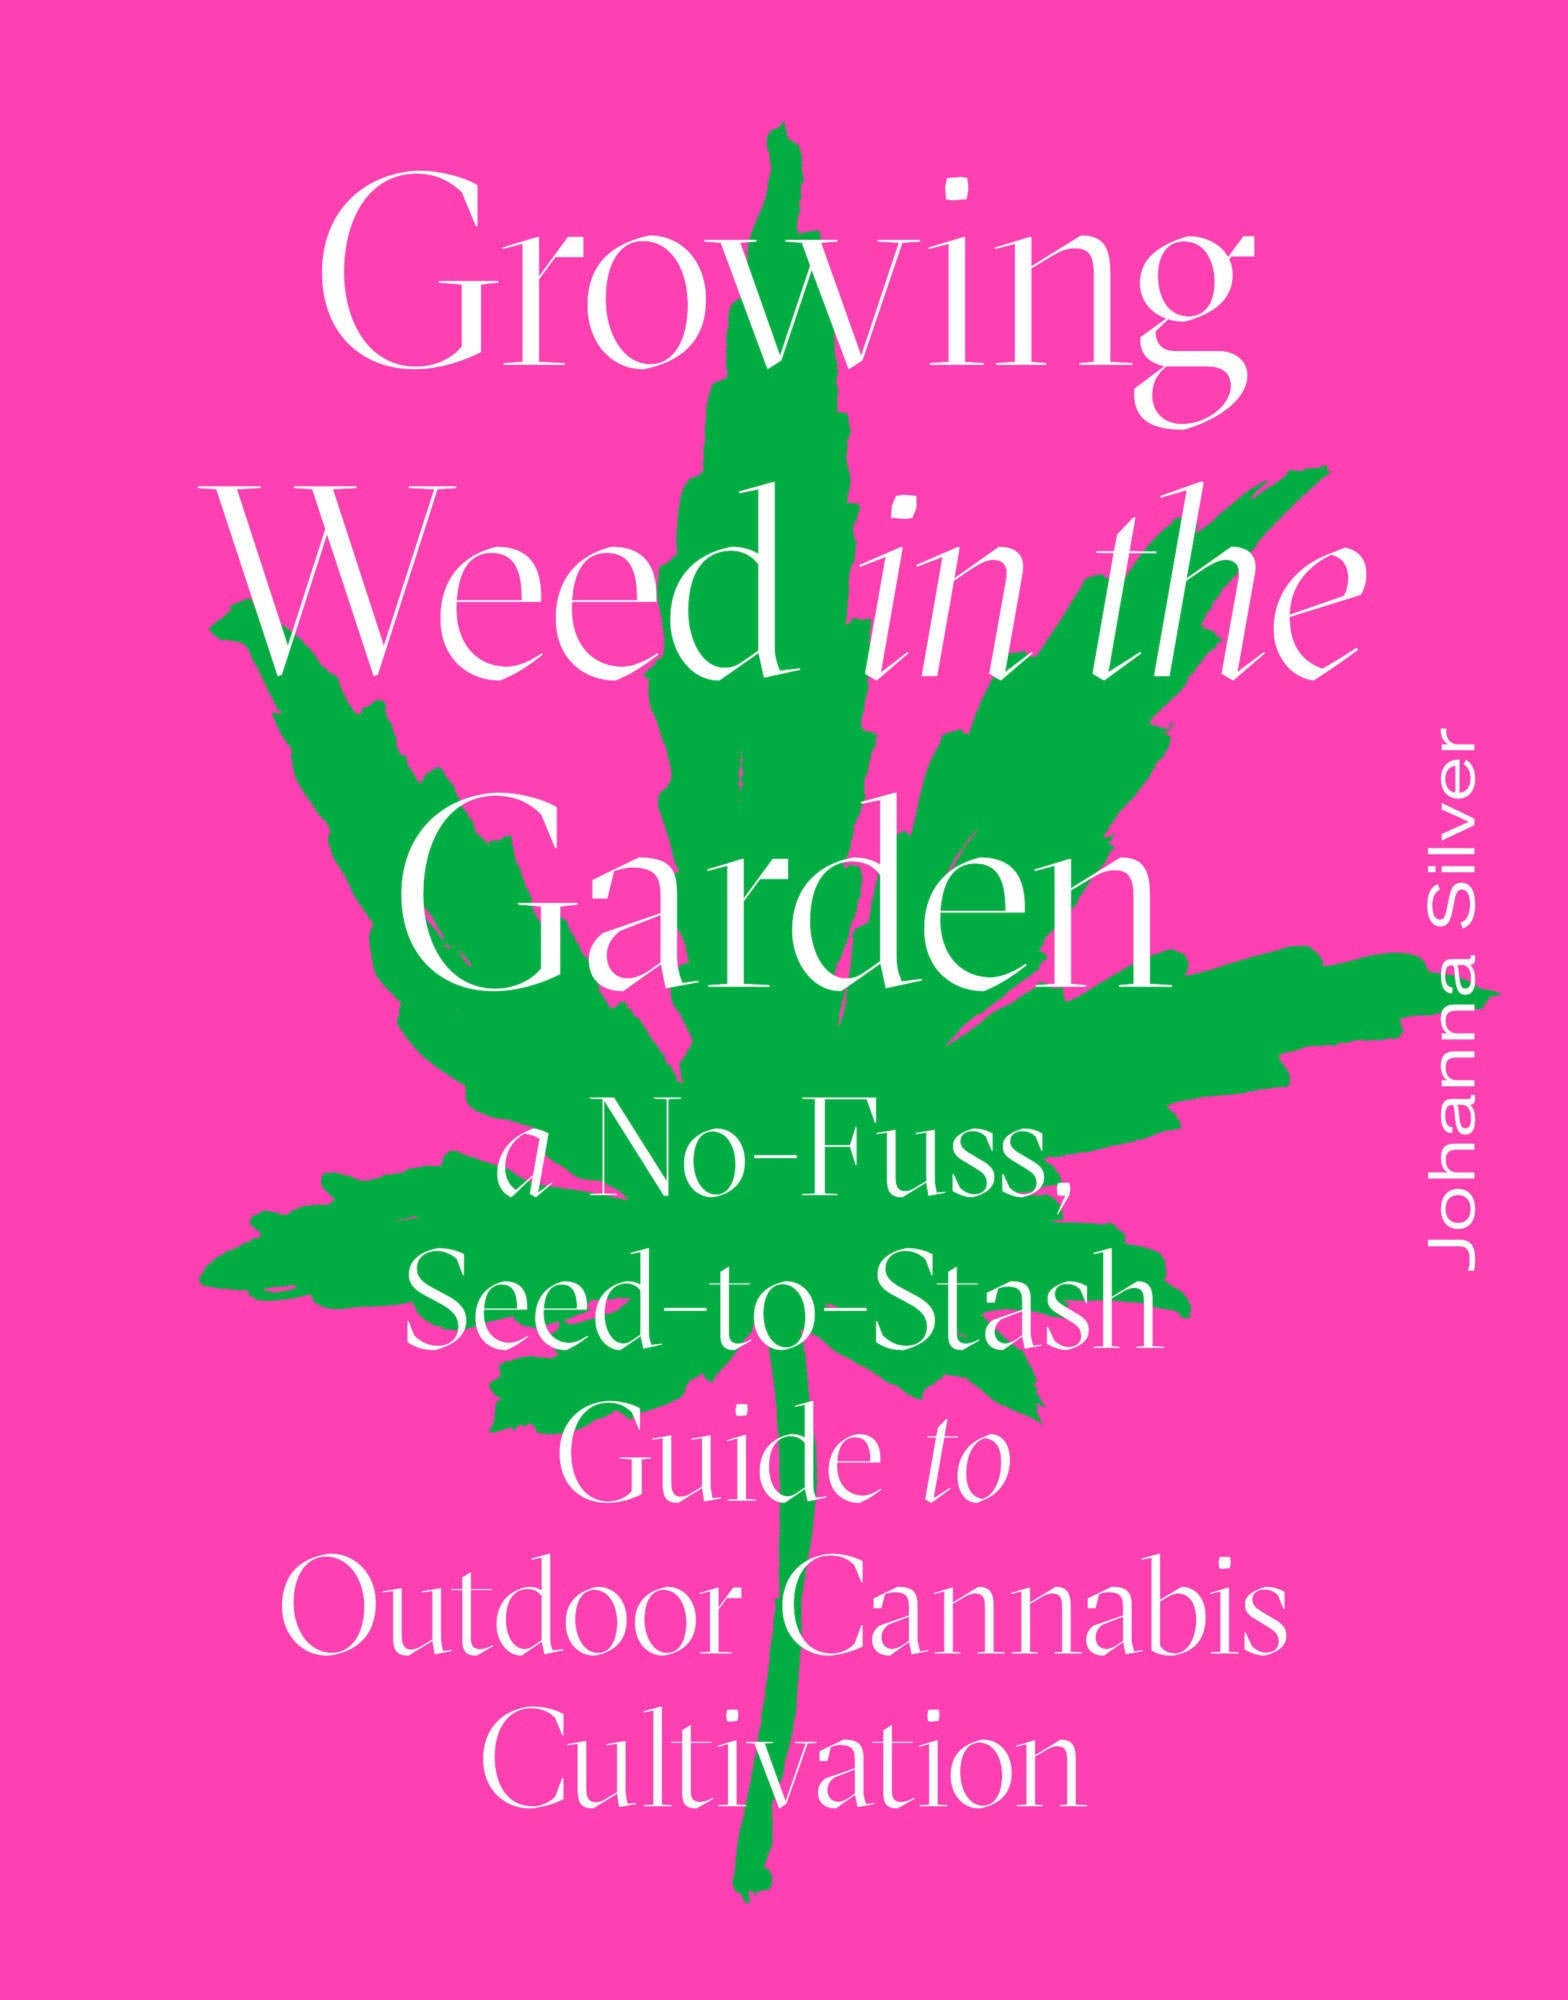 Growing Weed in the Garden